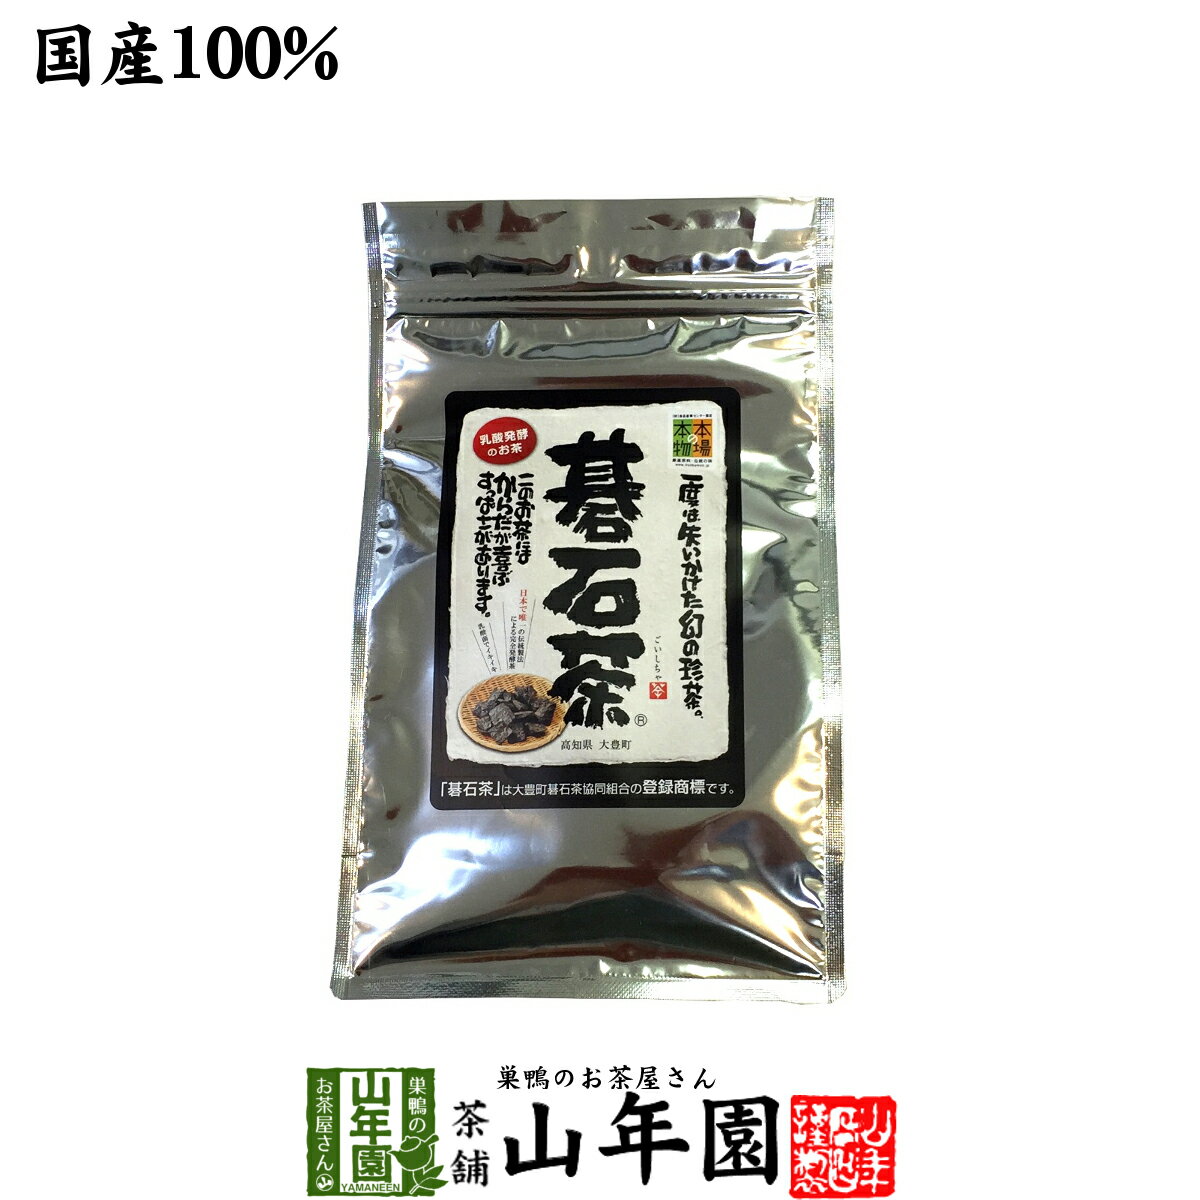 【碁石茶】大豊町の碁石茶 国産 送